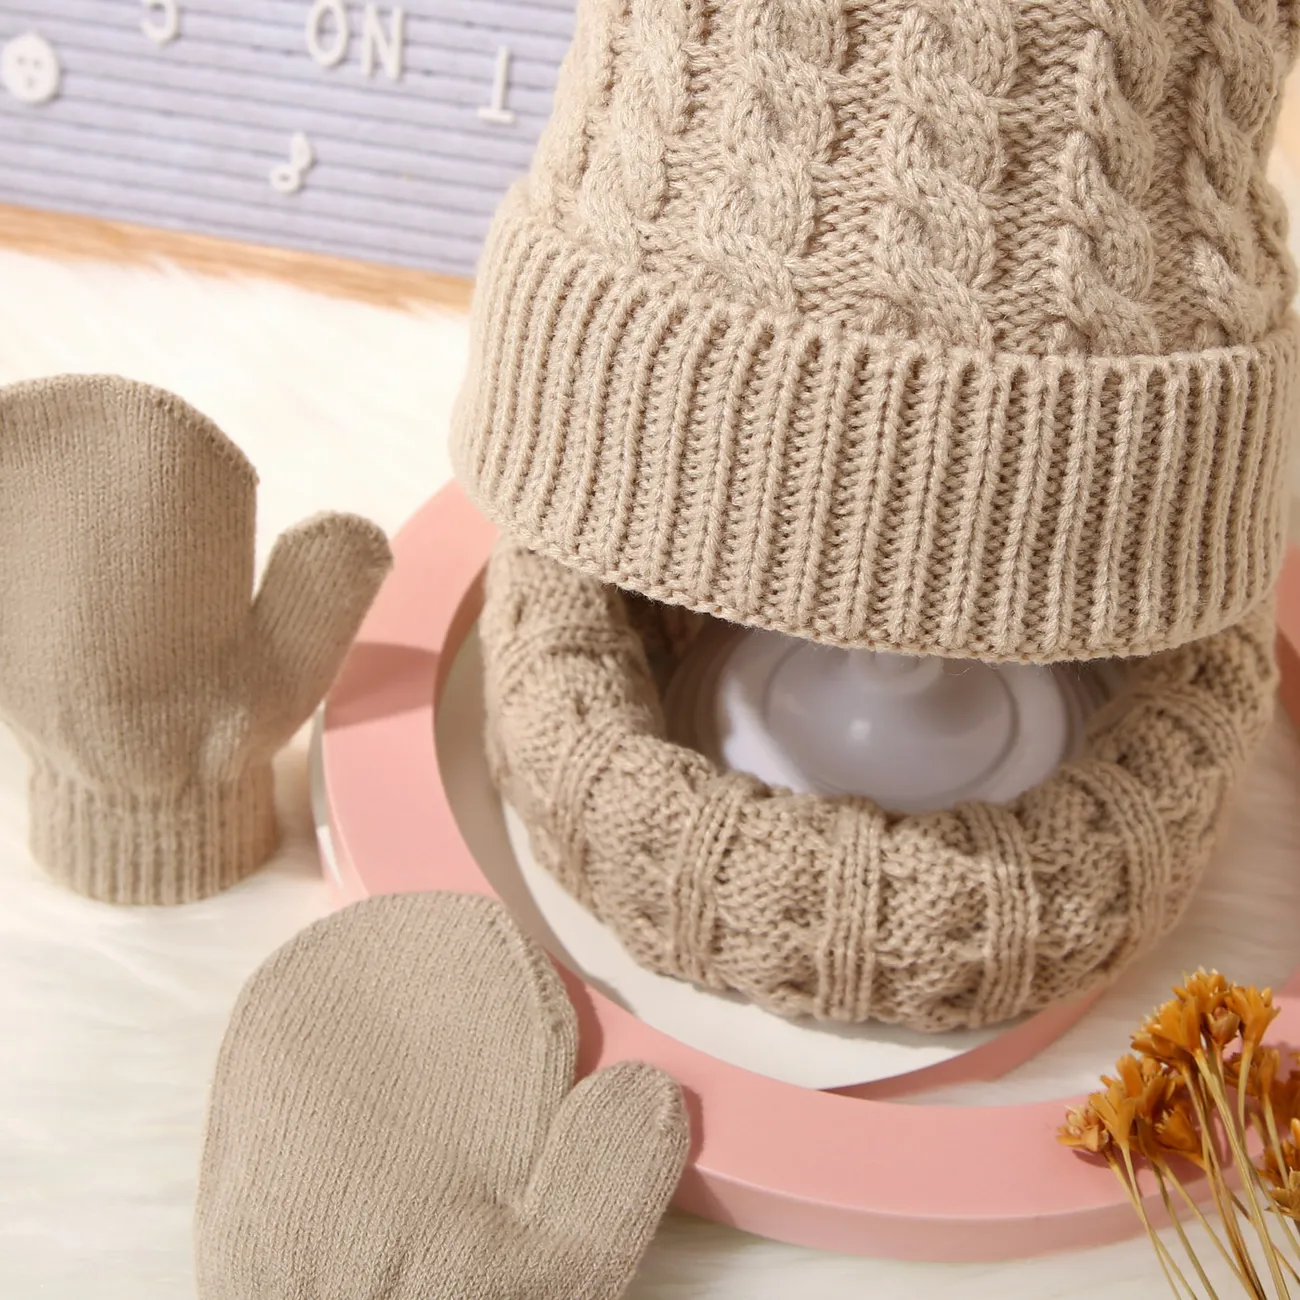 3 件裝嬰兒 / 蹣跚學步的絨球裝飾純色絞花針織帽、圍巾和連指手套套裝 卡其色 big image 1